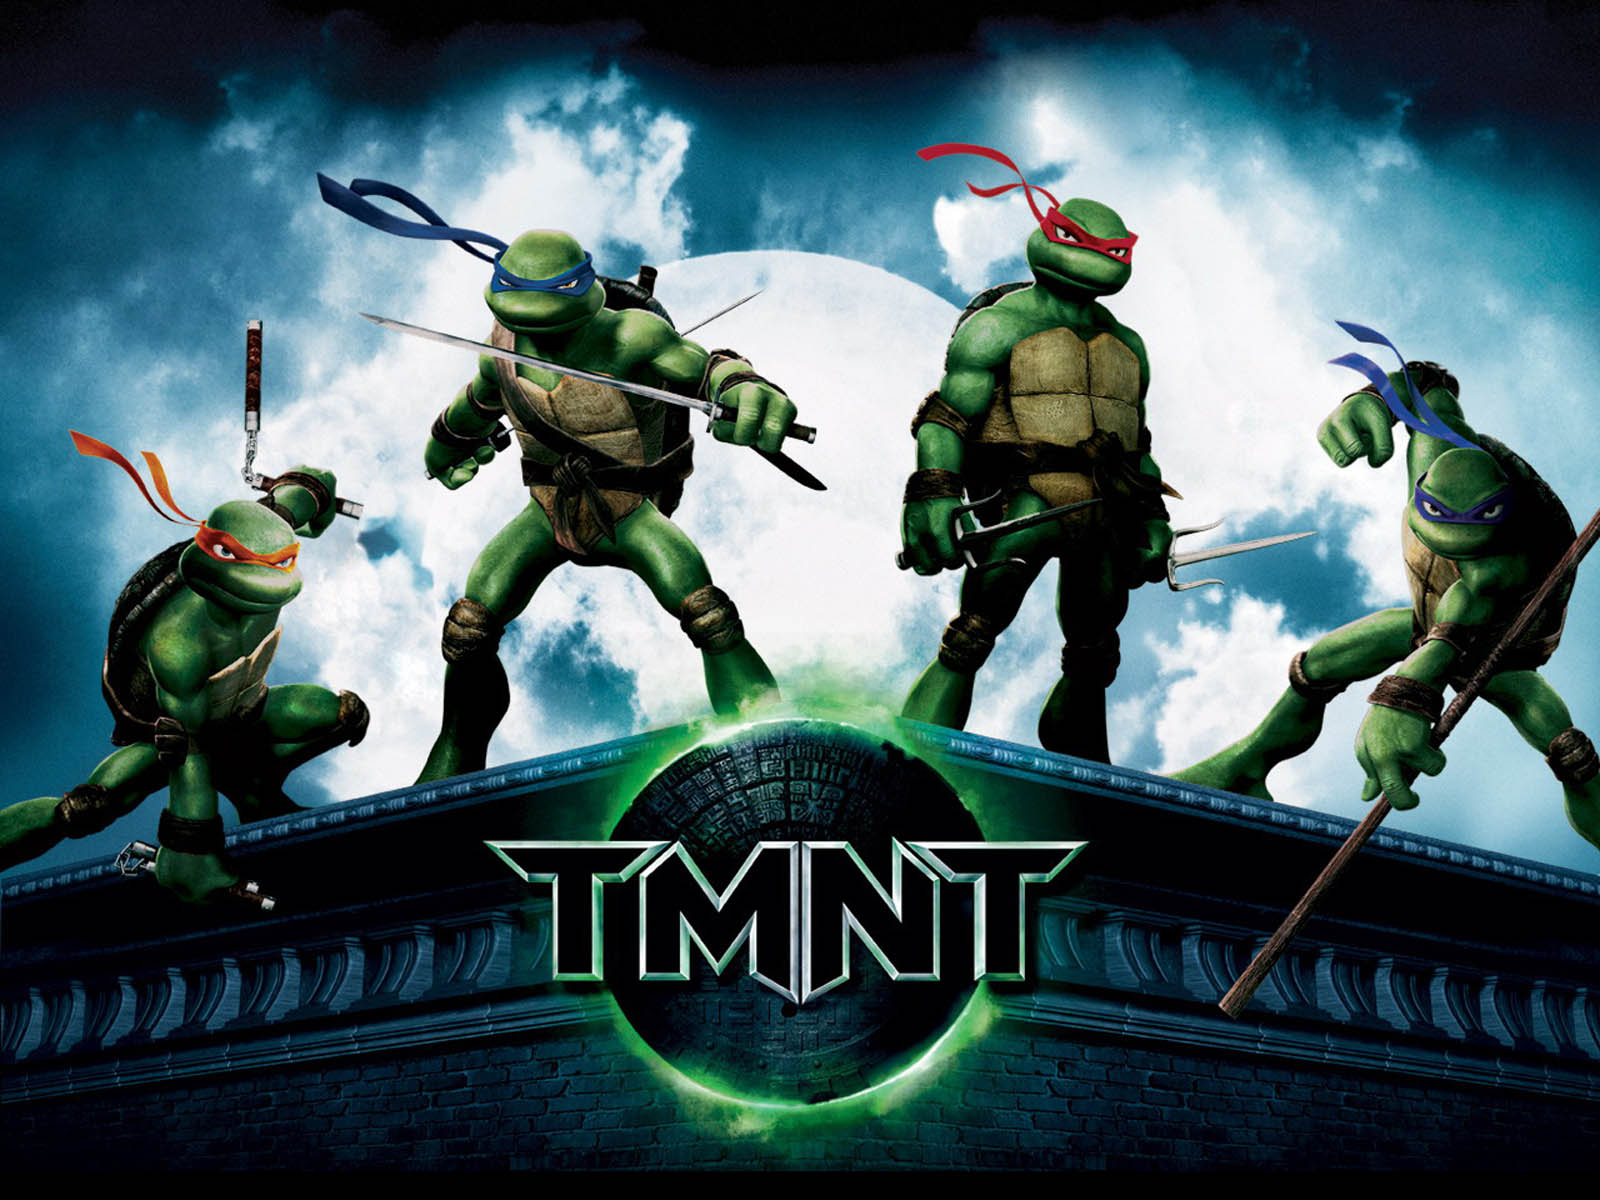 leonardo (tmnt), teenage mutant ninja turtles, movie, tmnt (2007), donatello (tmnt), michelangelo (tmnt), raphael (tmnt), tmnt